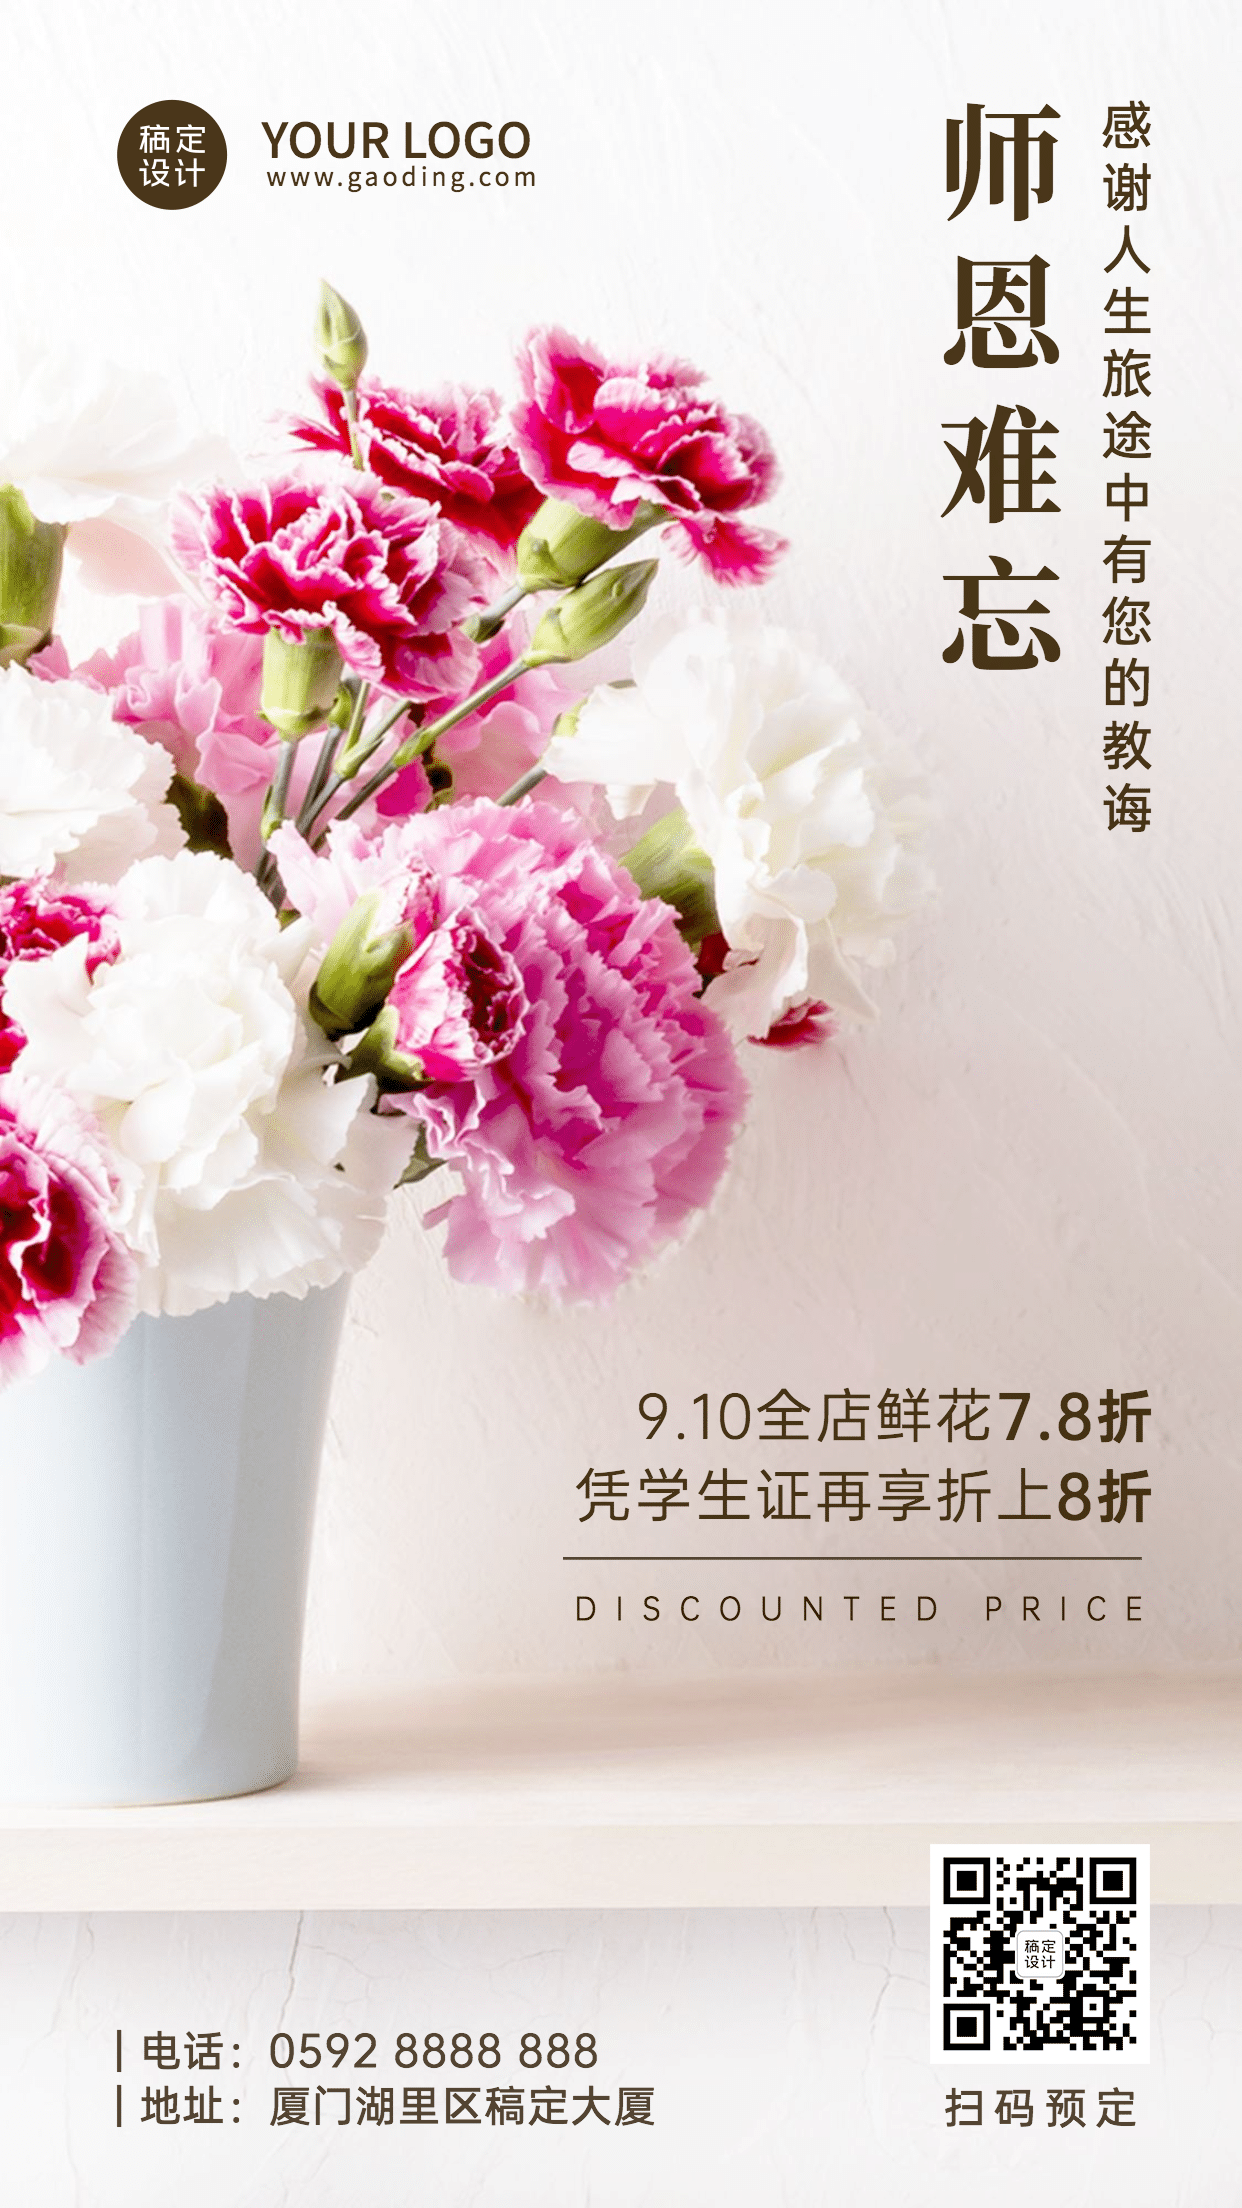 教师节祝福鲜花产品展示手机海报